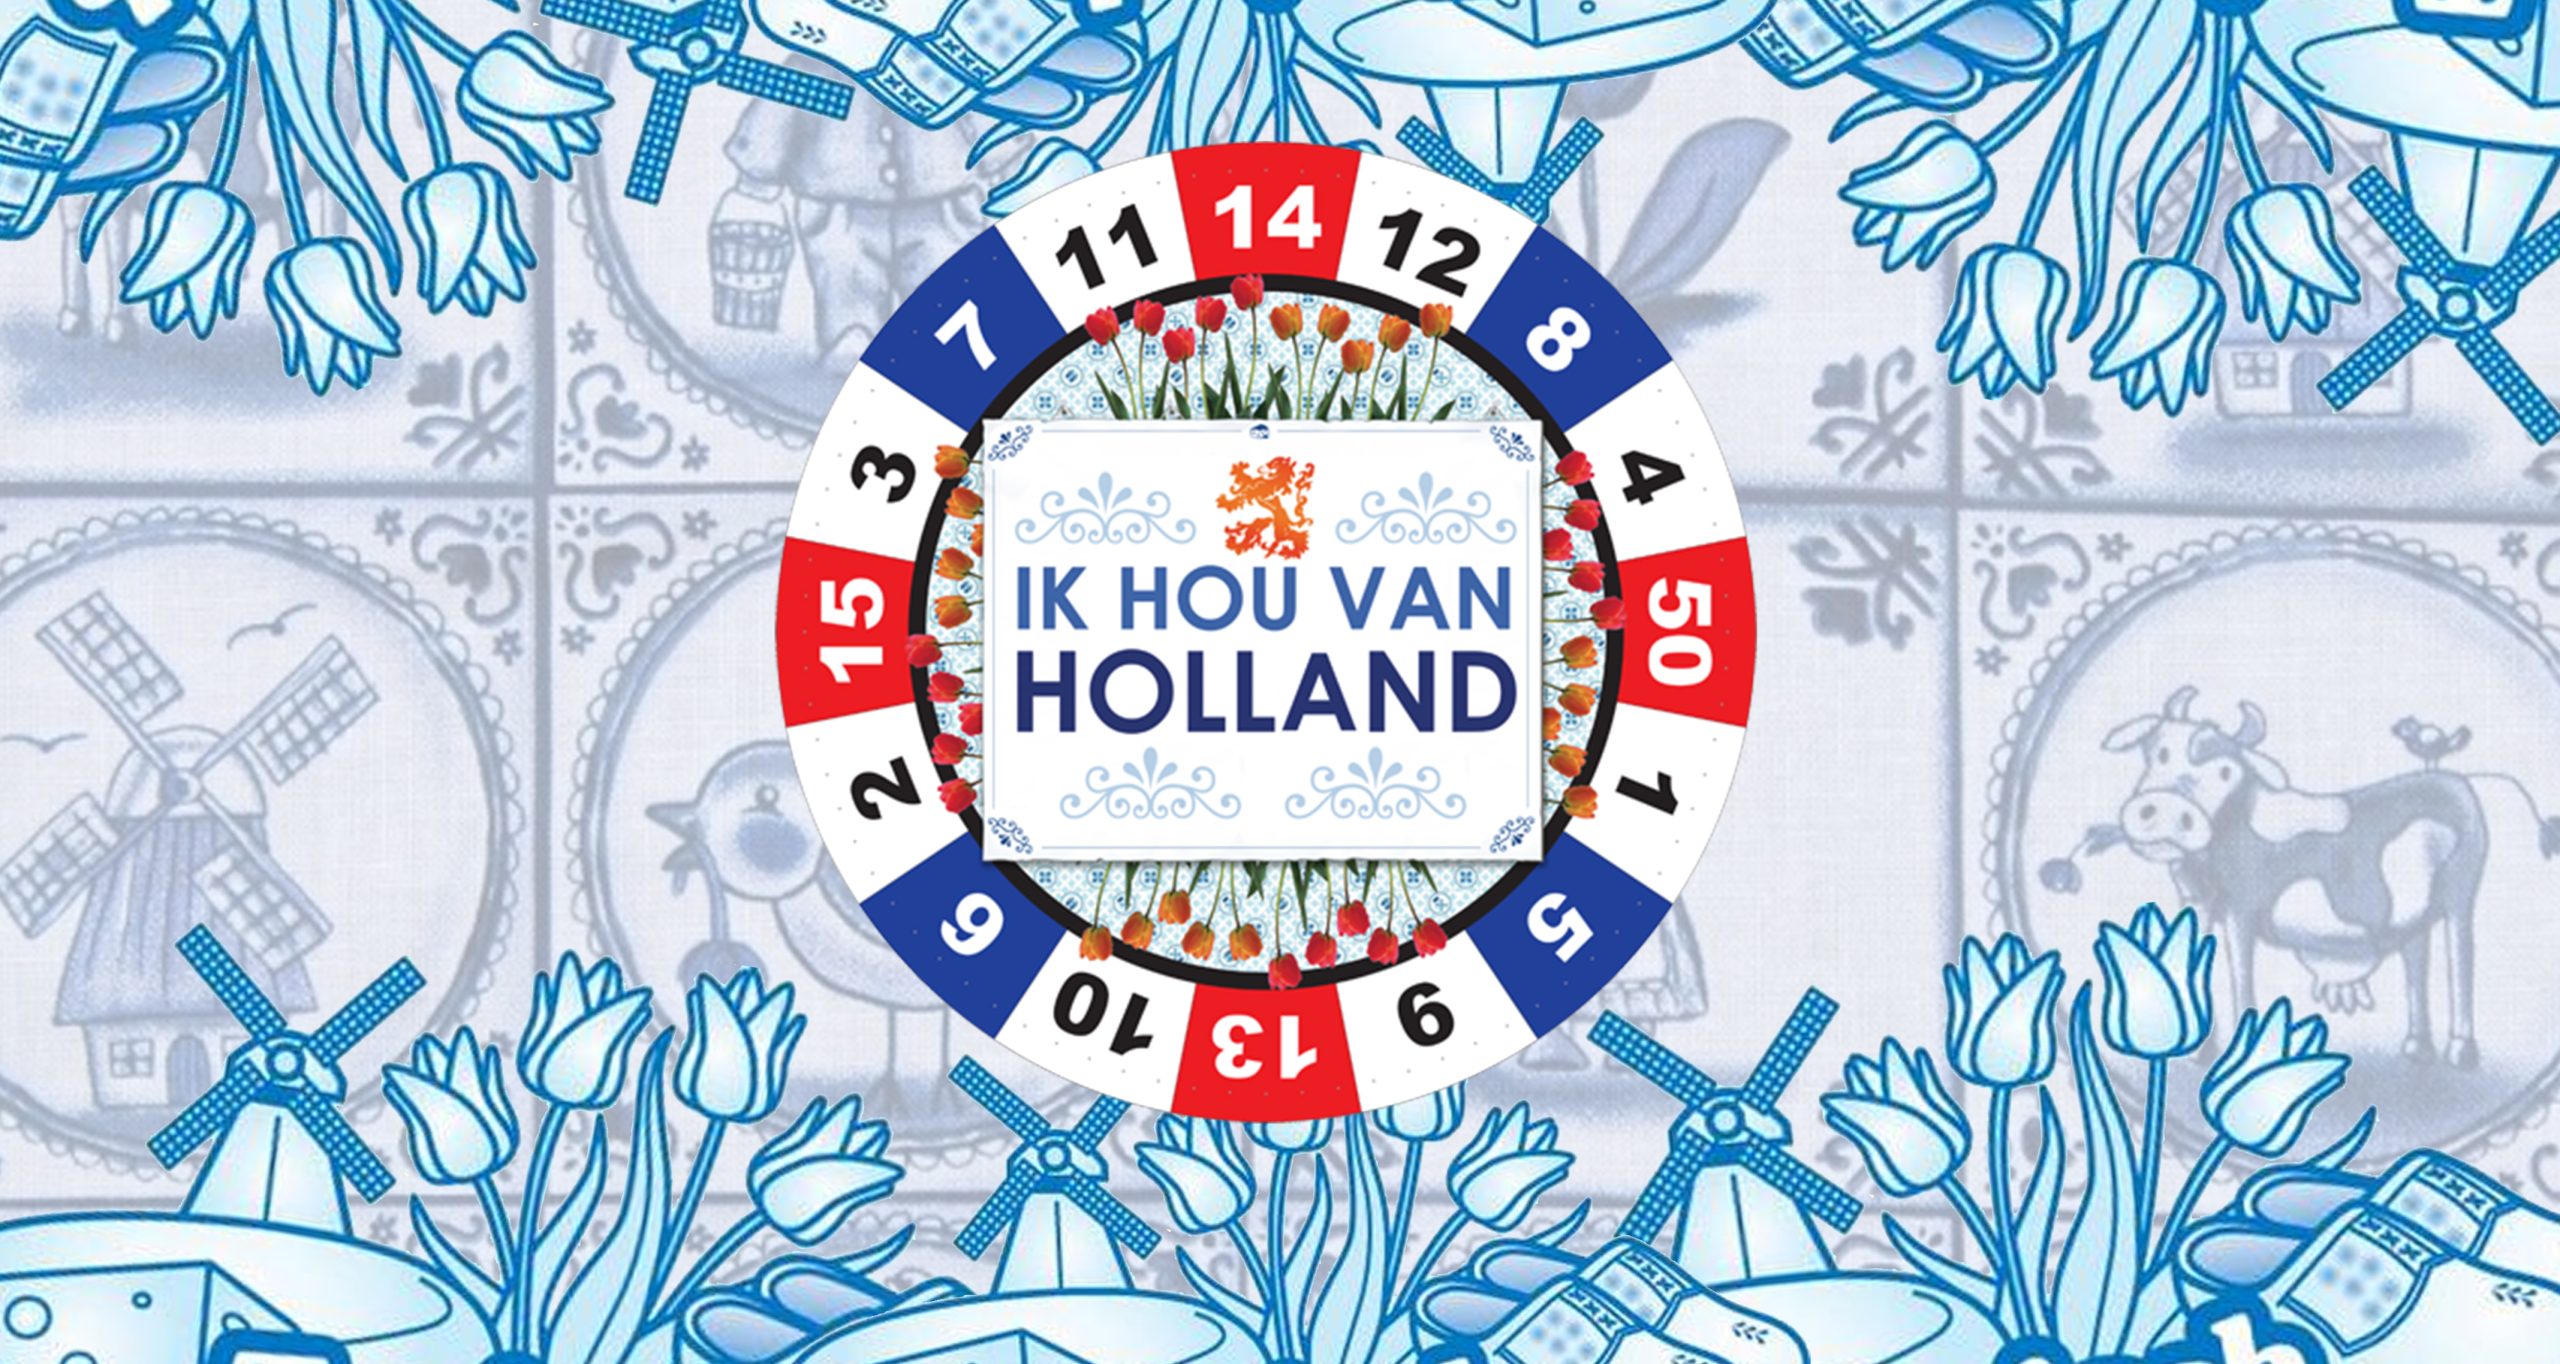 Bedrijfsuitje Leeuwarden: Ik Hou Van Holland in de stad